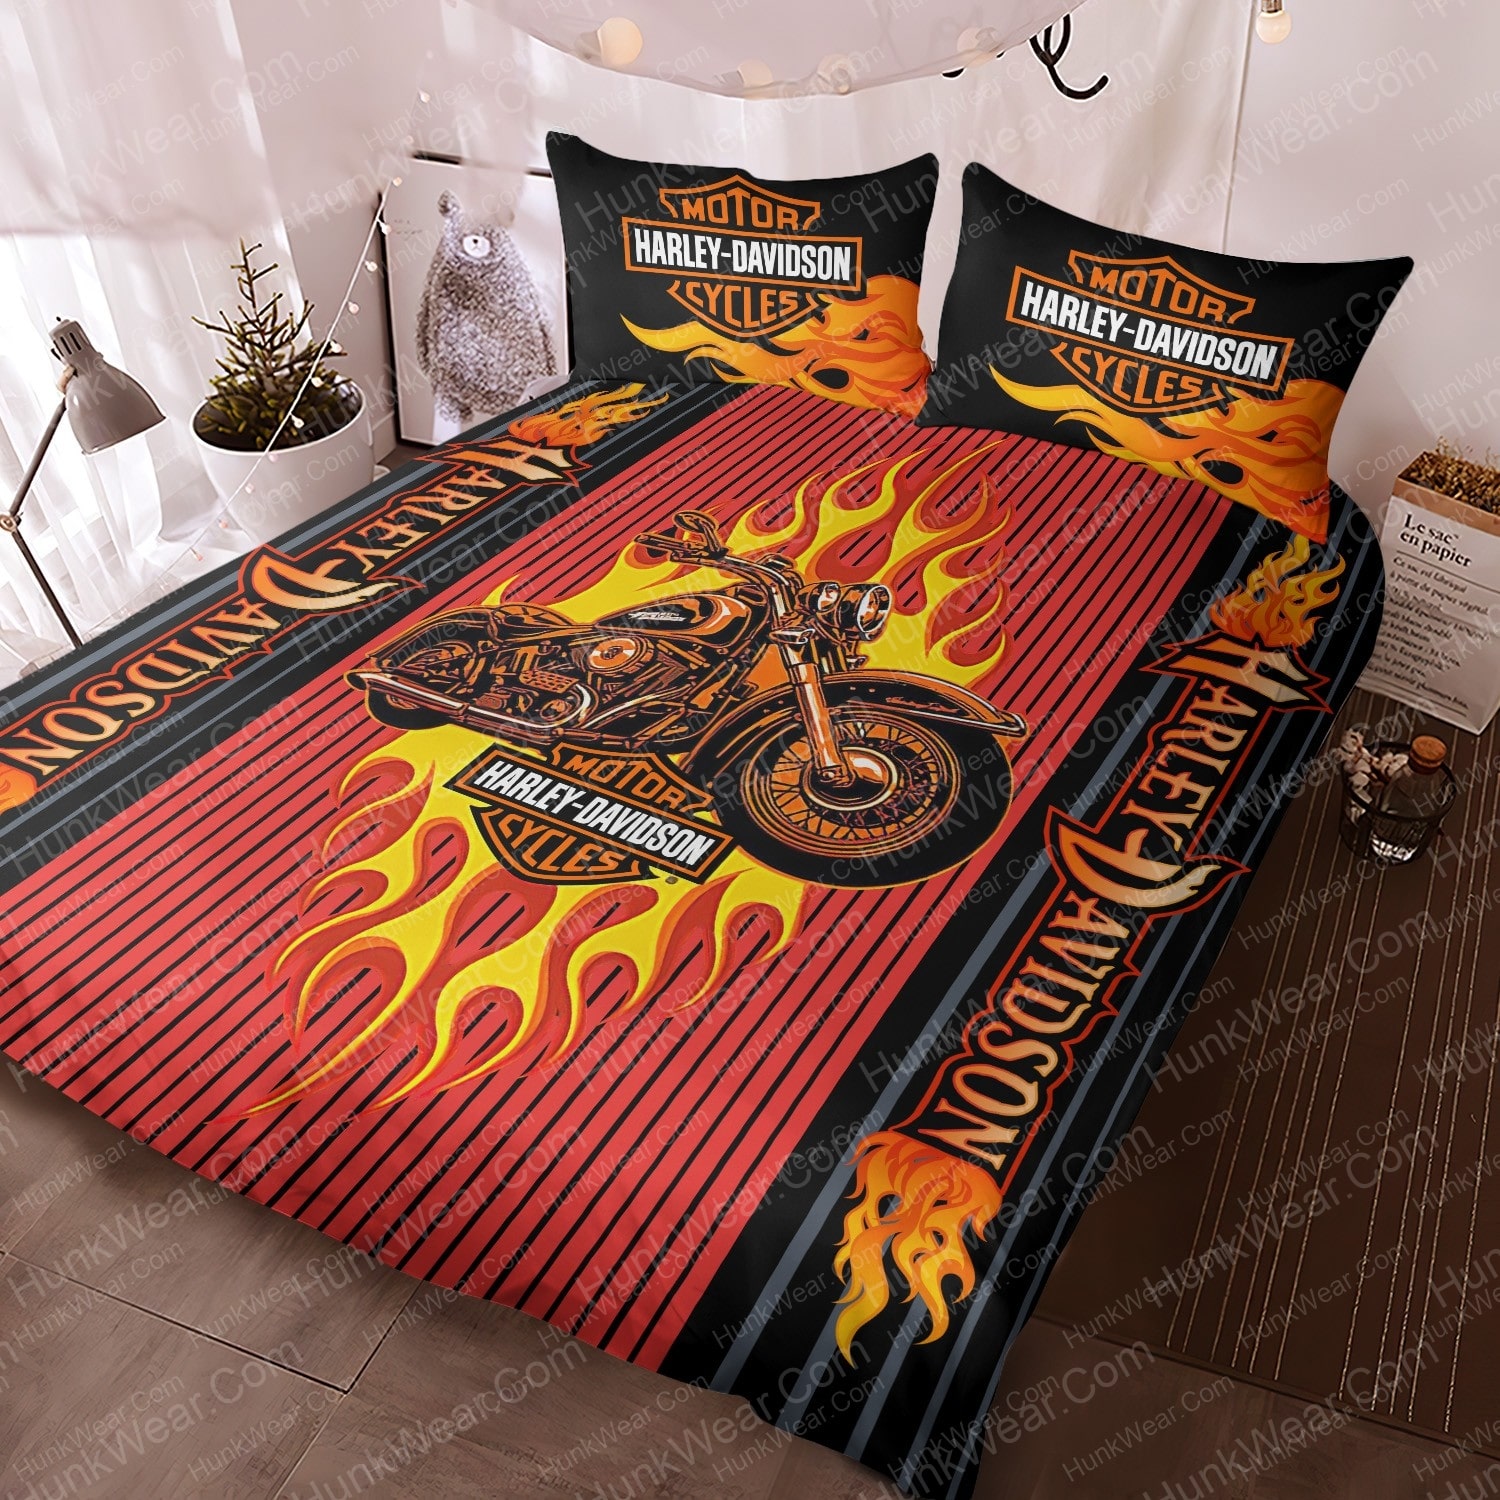 harley davidson flames logo bed set bedding set 1